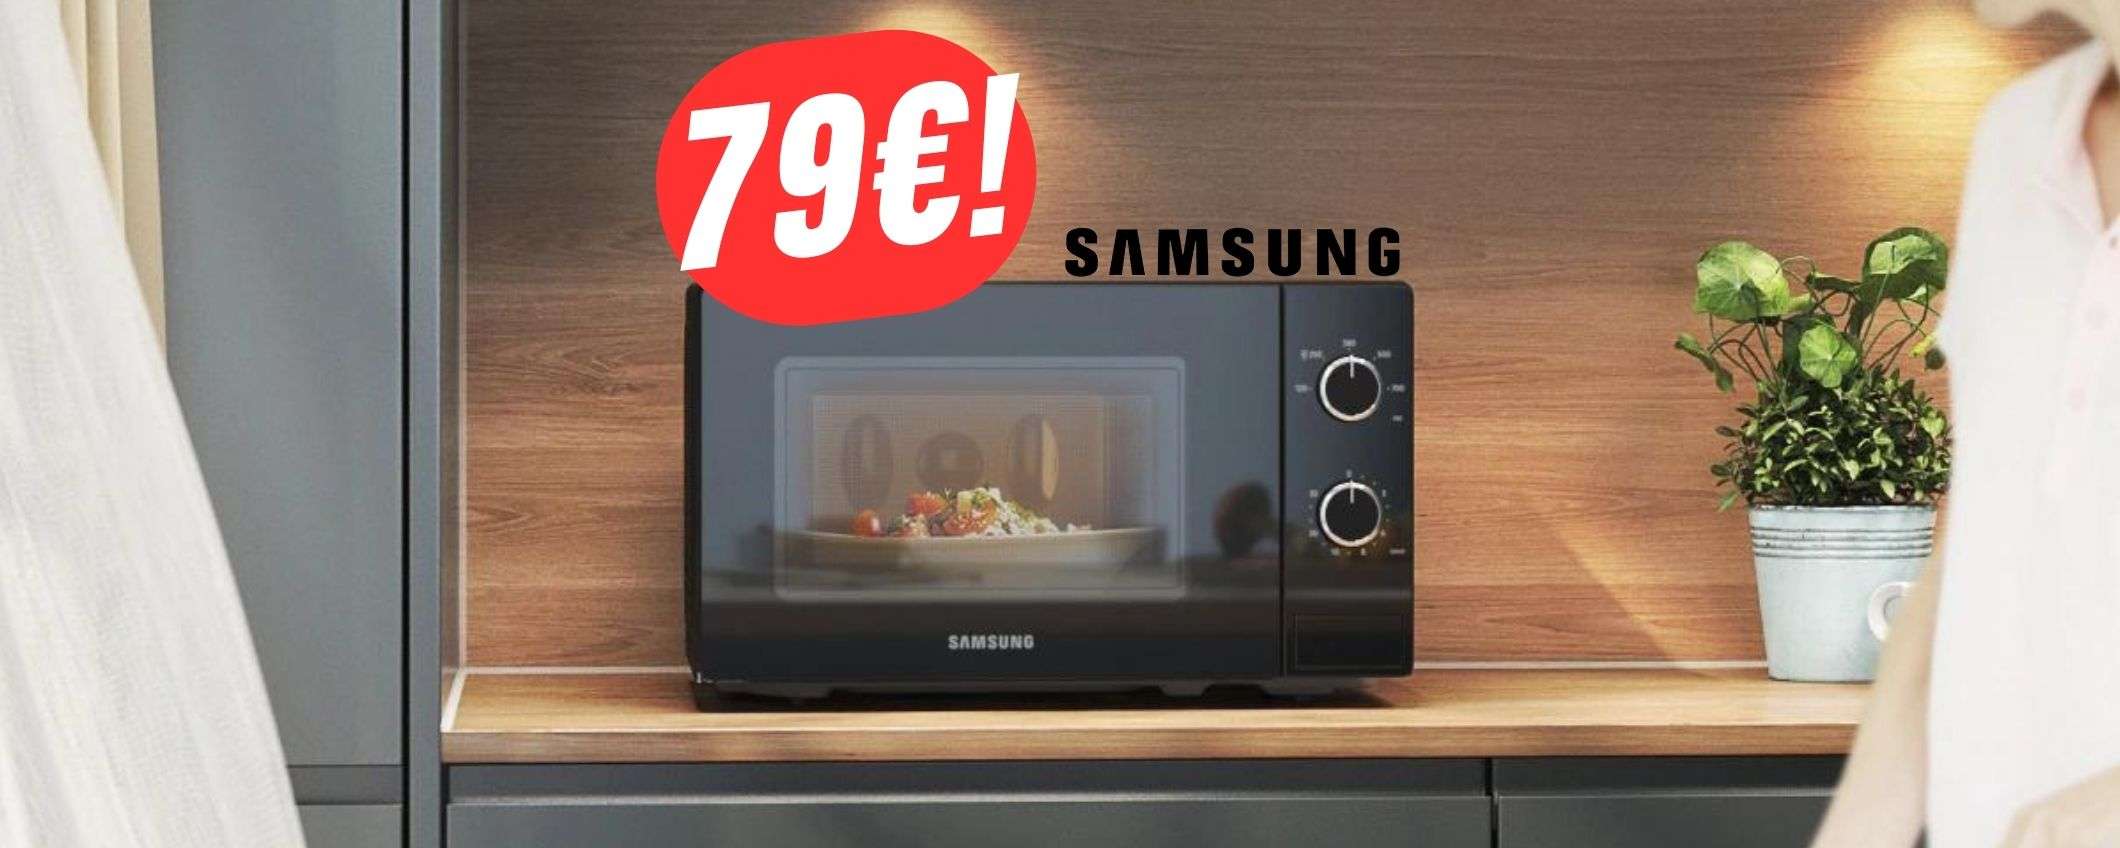 MINIMO STORICO per il forno a MICROONDE di Samsung a 79€!